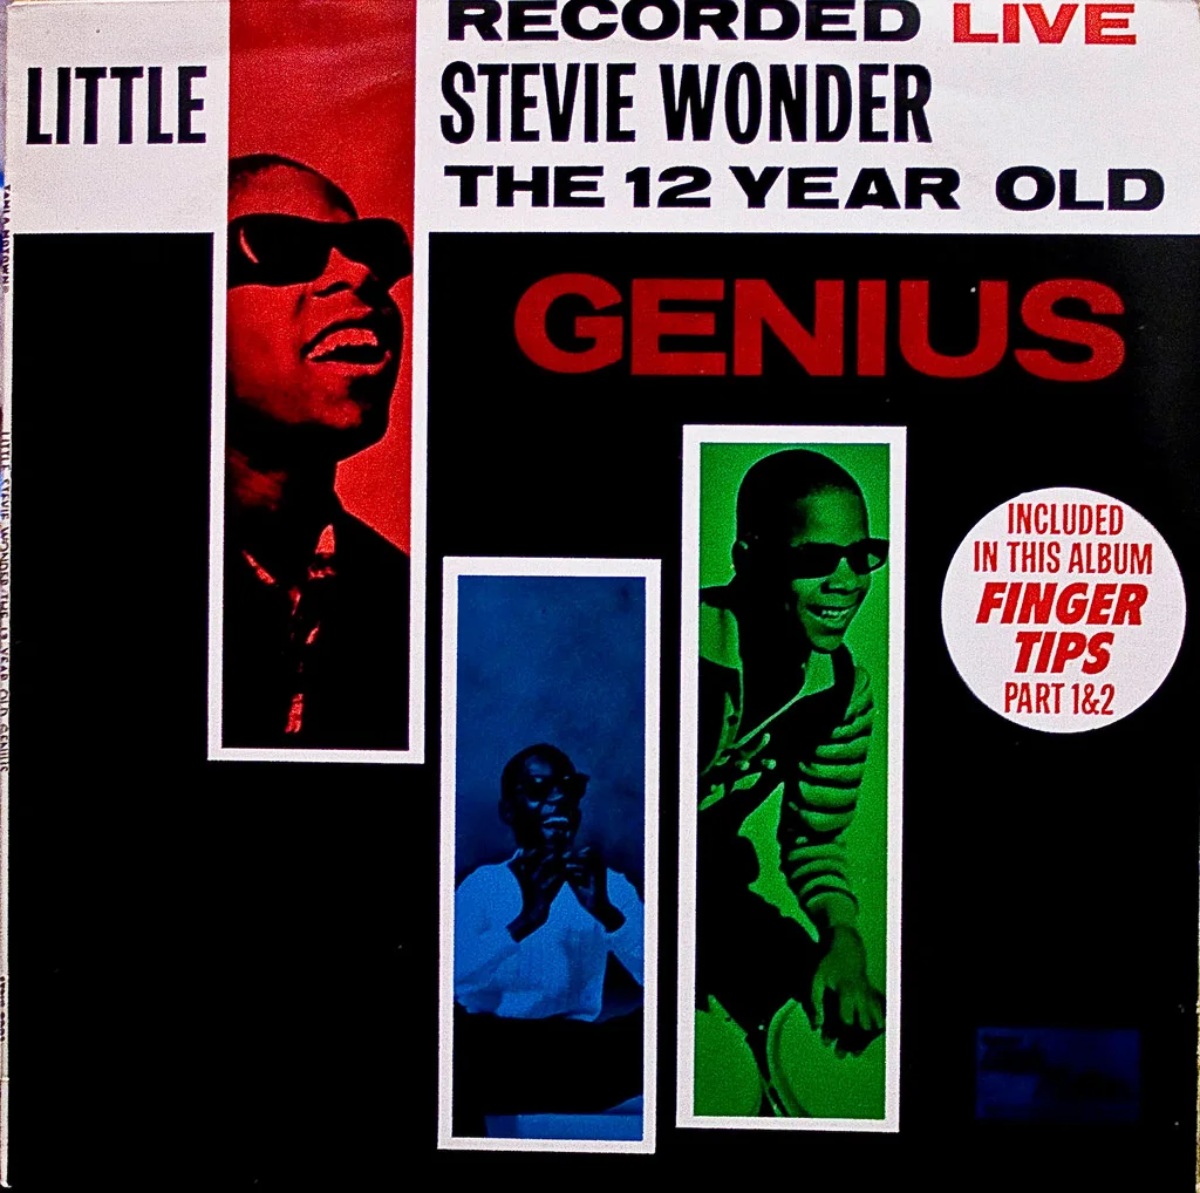 Обложка альбома «Recorded Live: The 12 Year Old Genius» Стиви Уандера